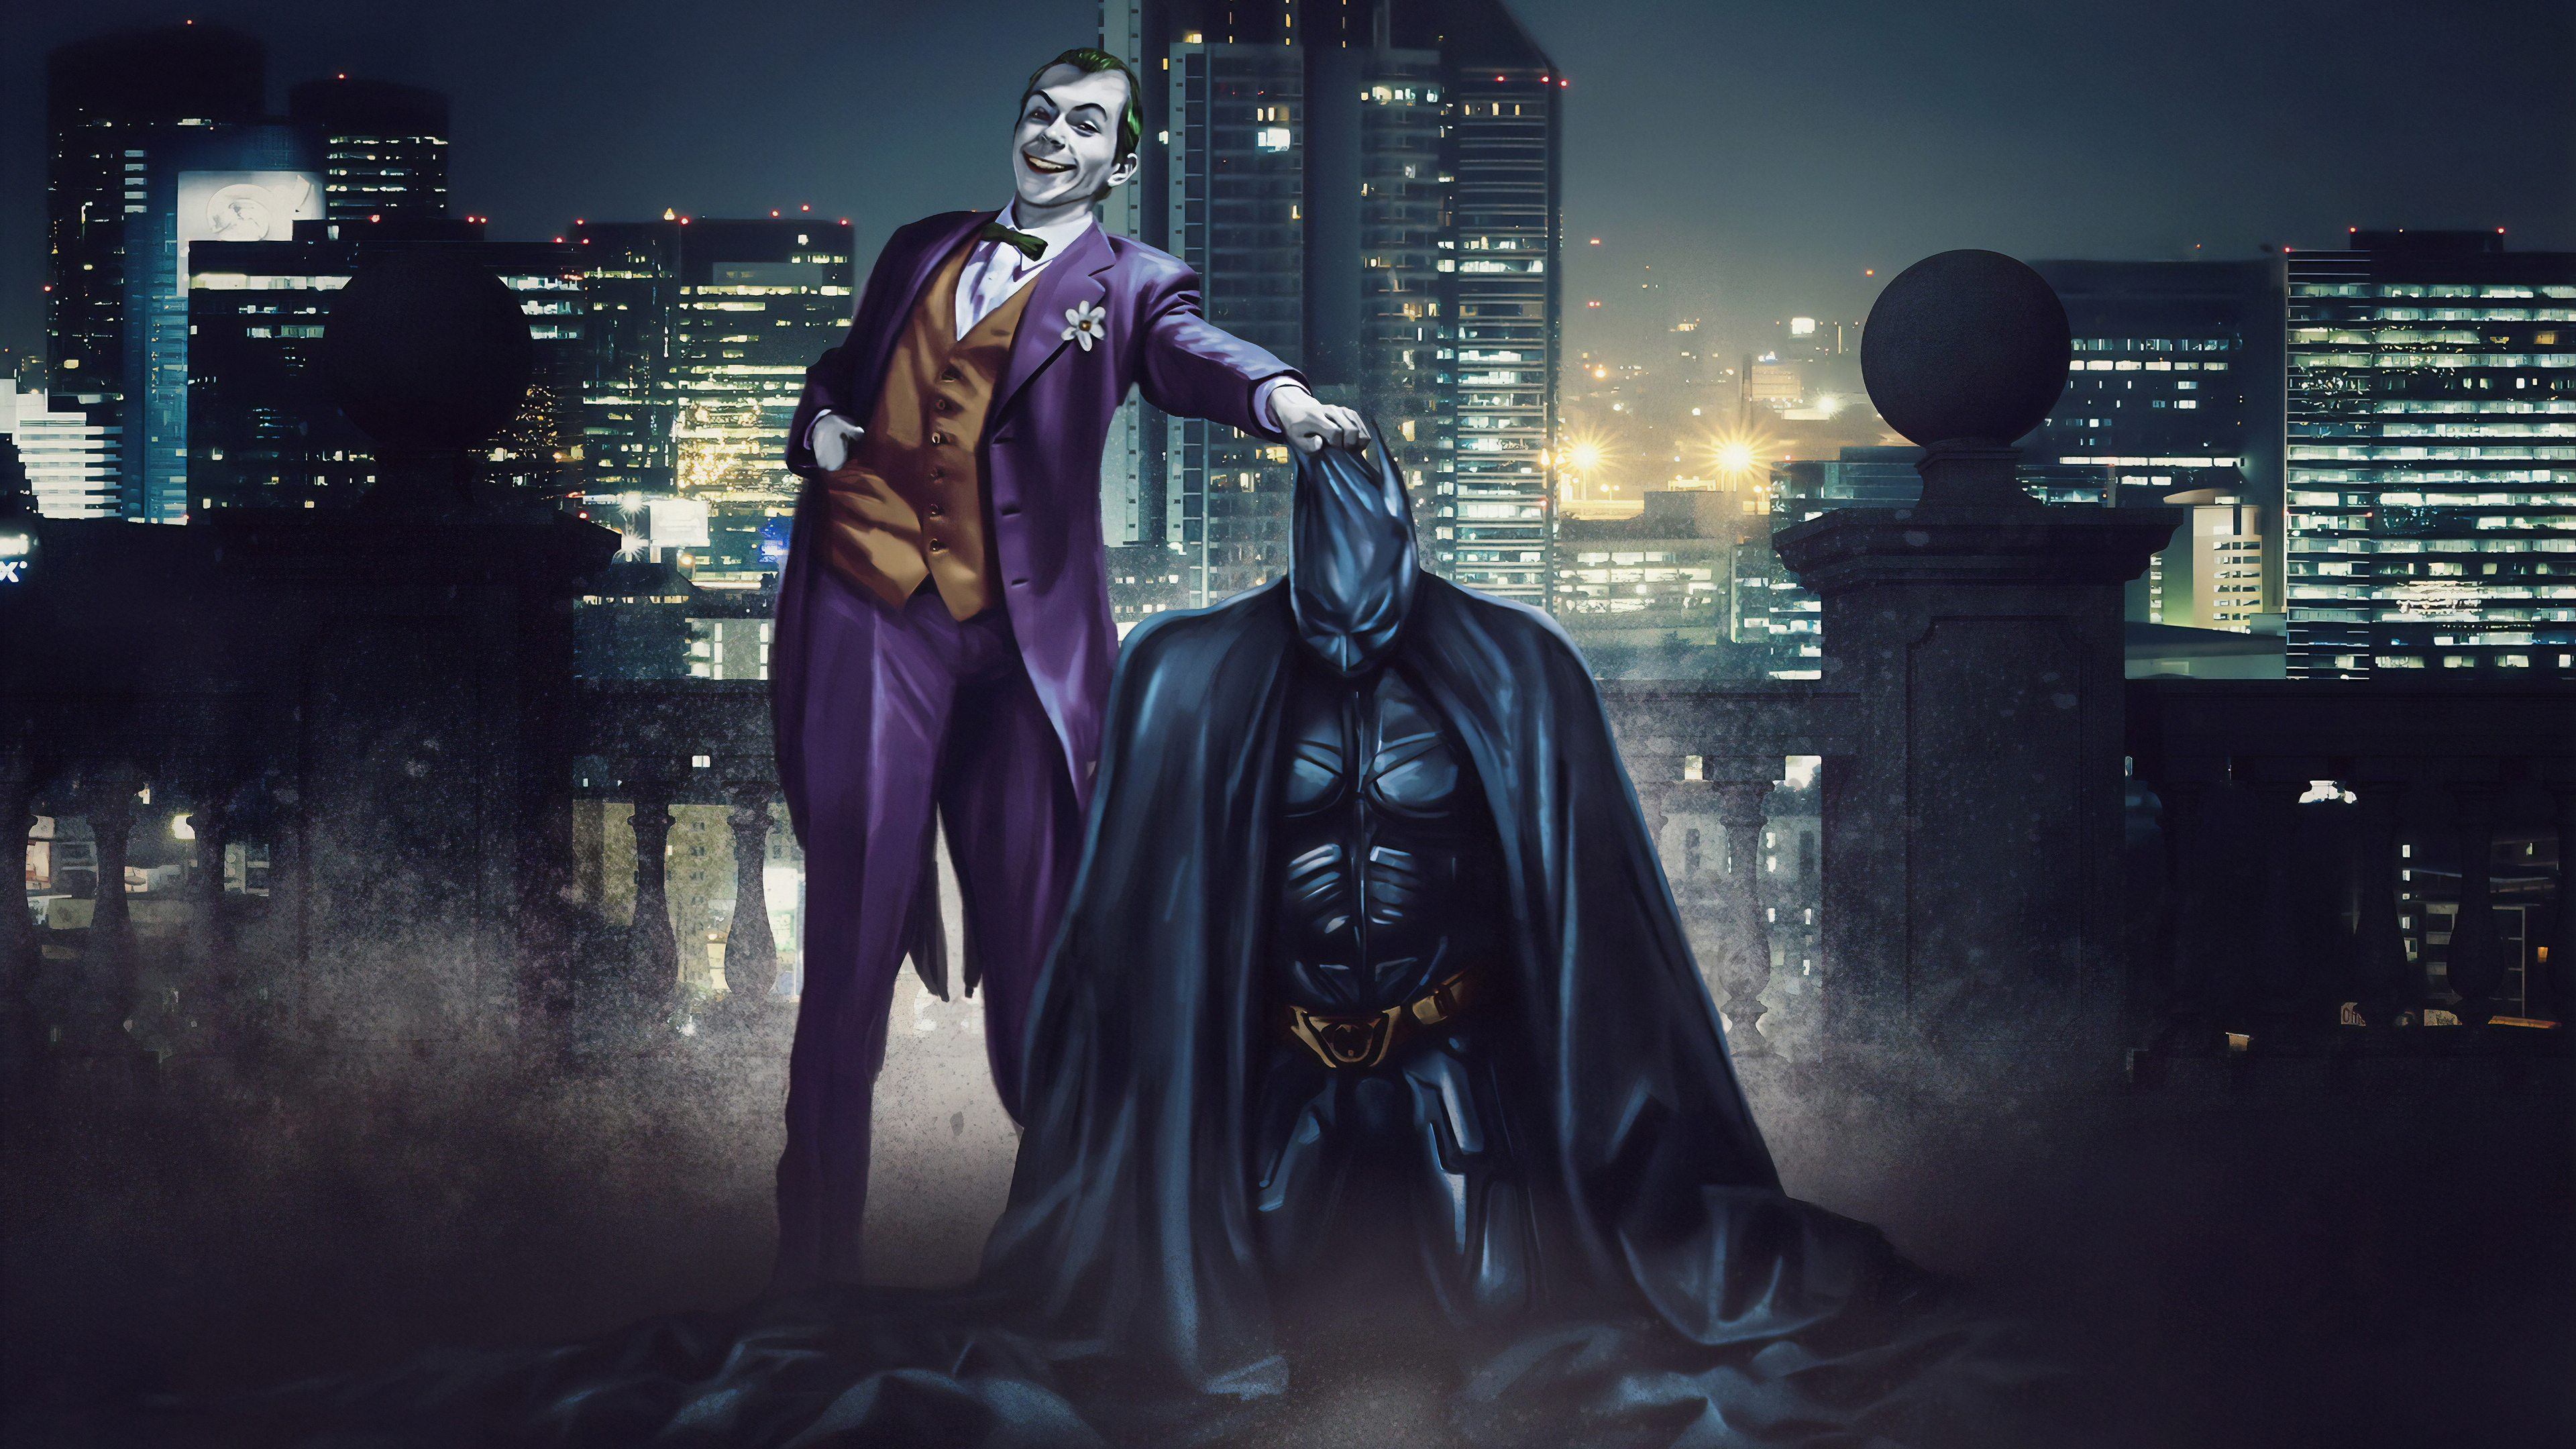 Batman vs Joker wallpaper by Ylcnkrks  Download on ZEDGE  5f93